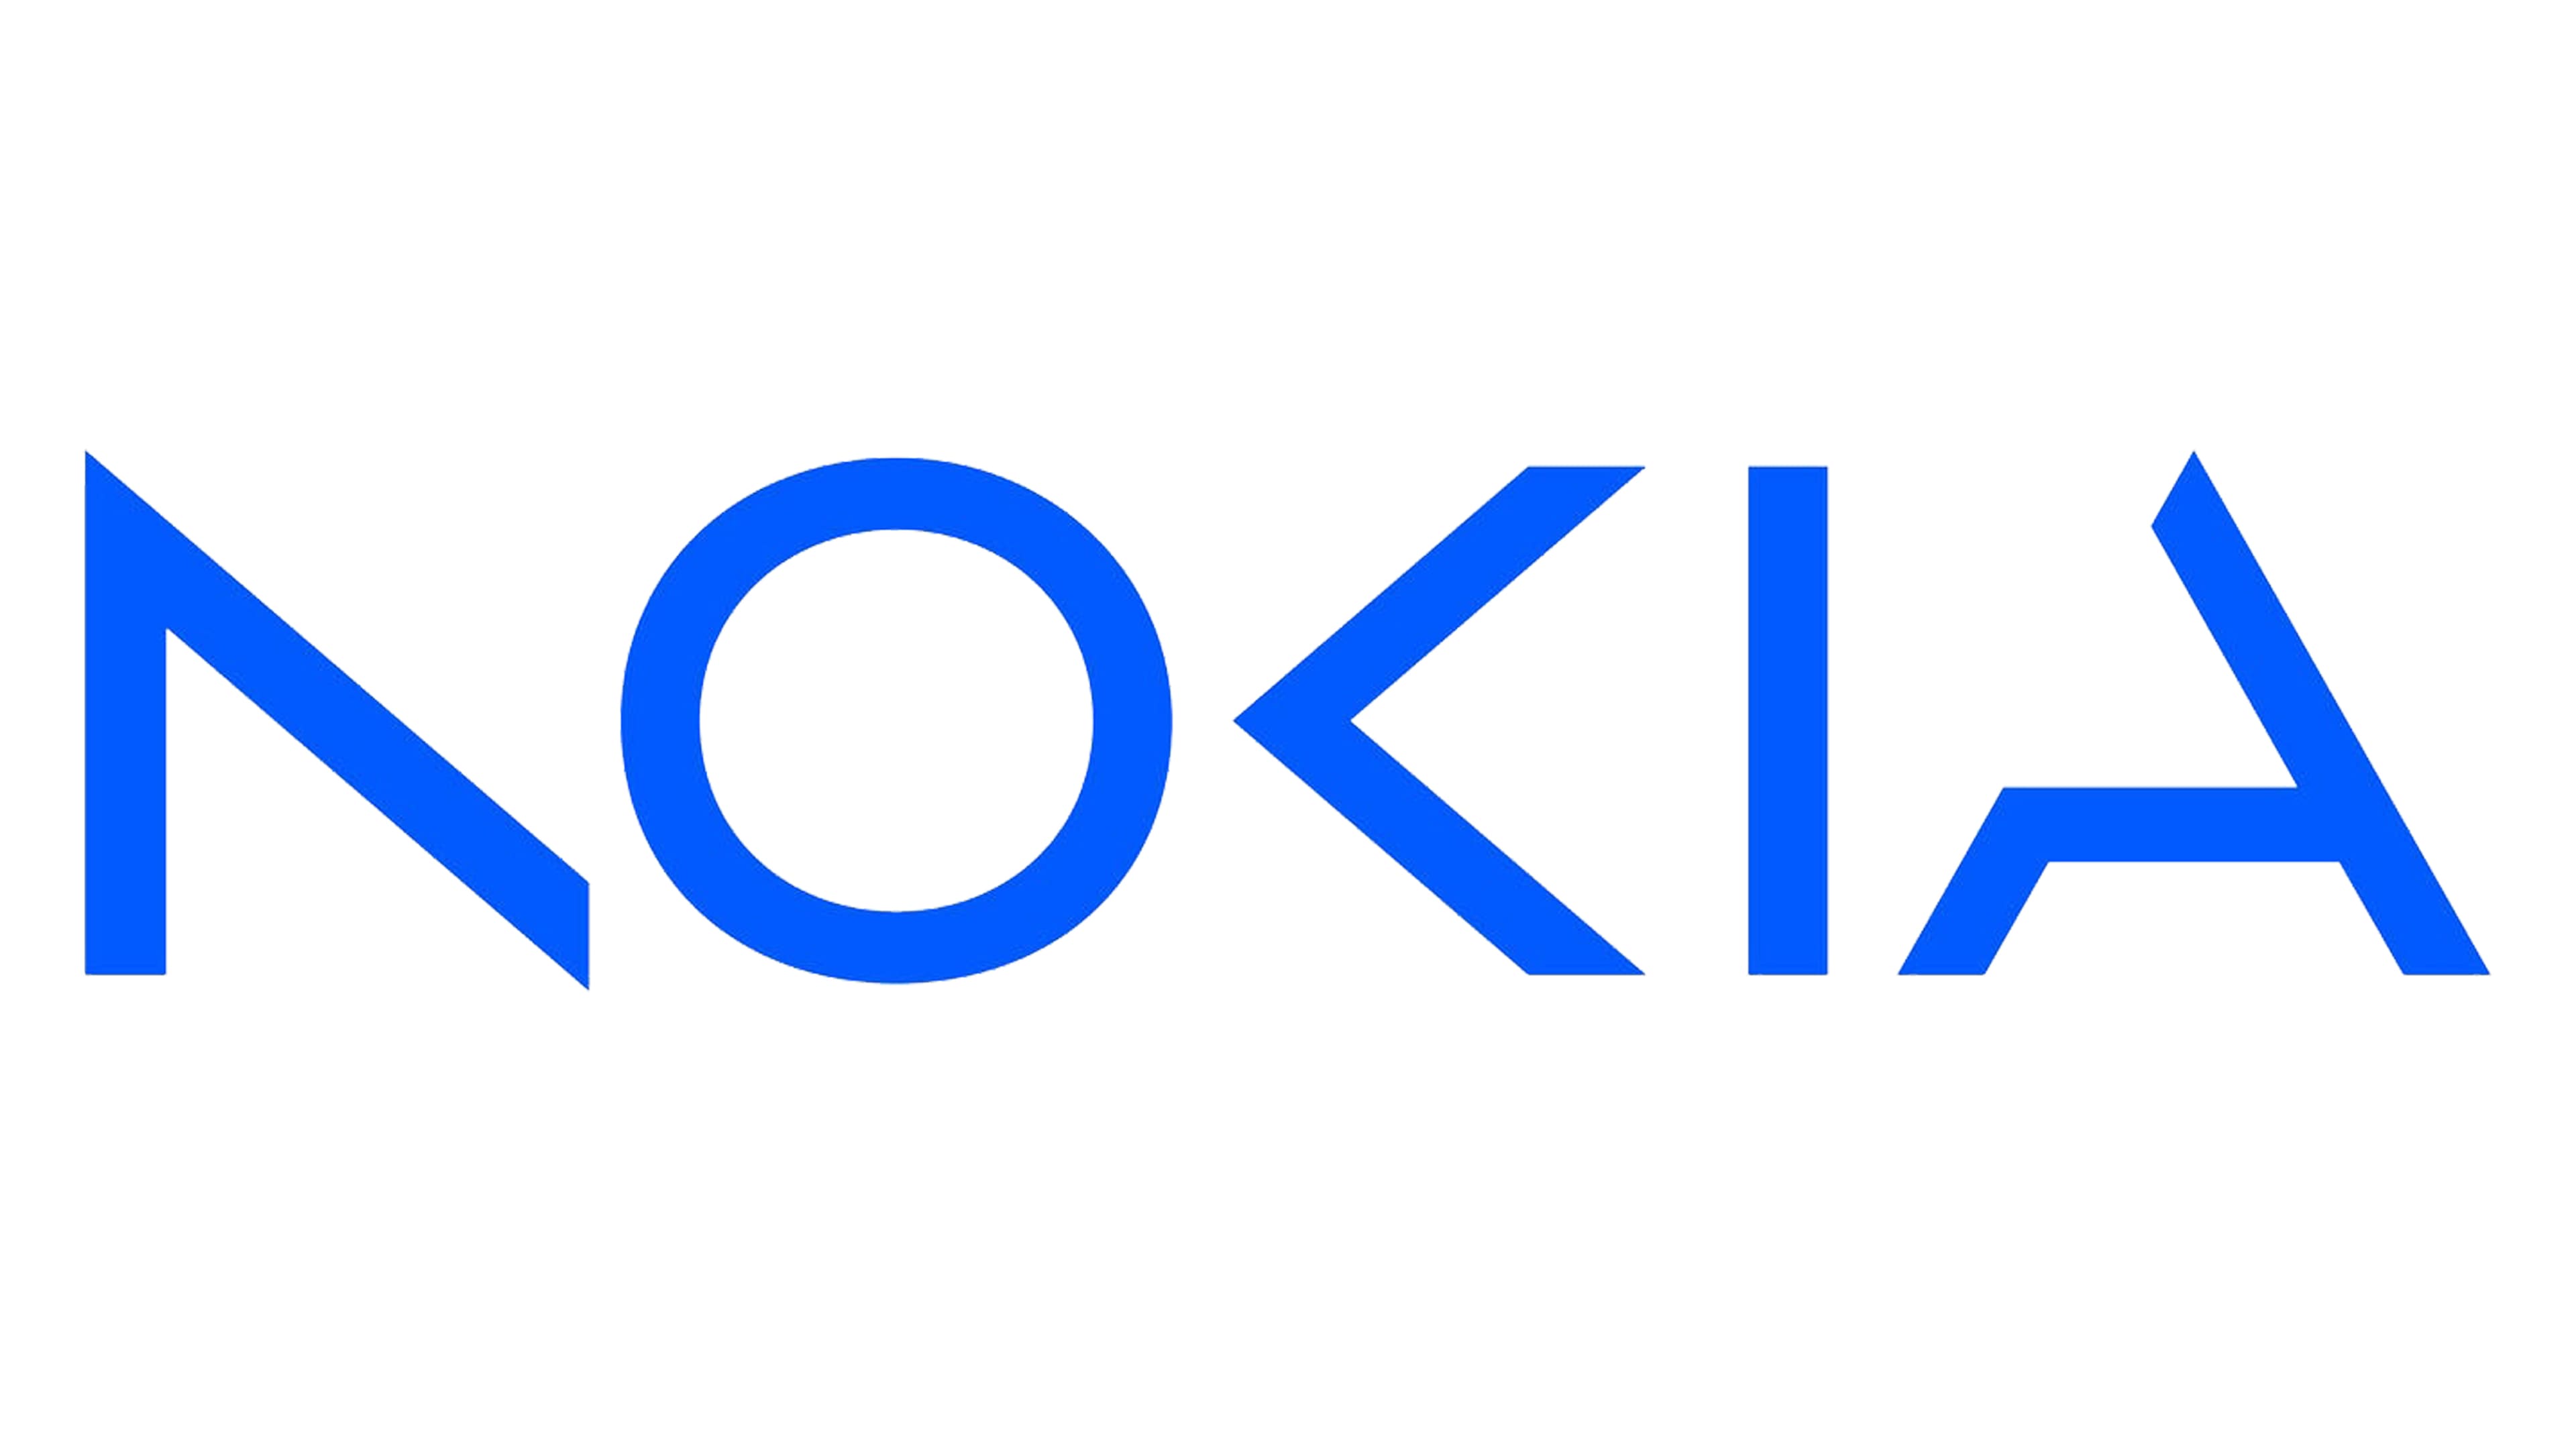 New Nokia logo